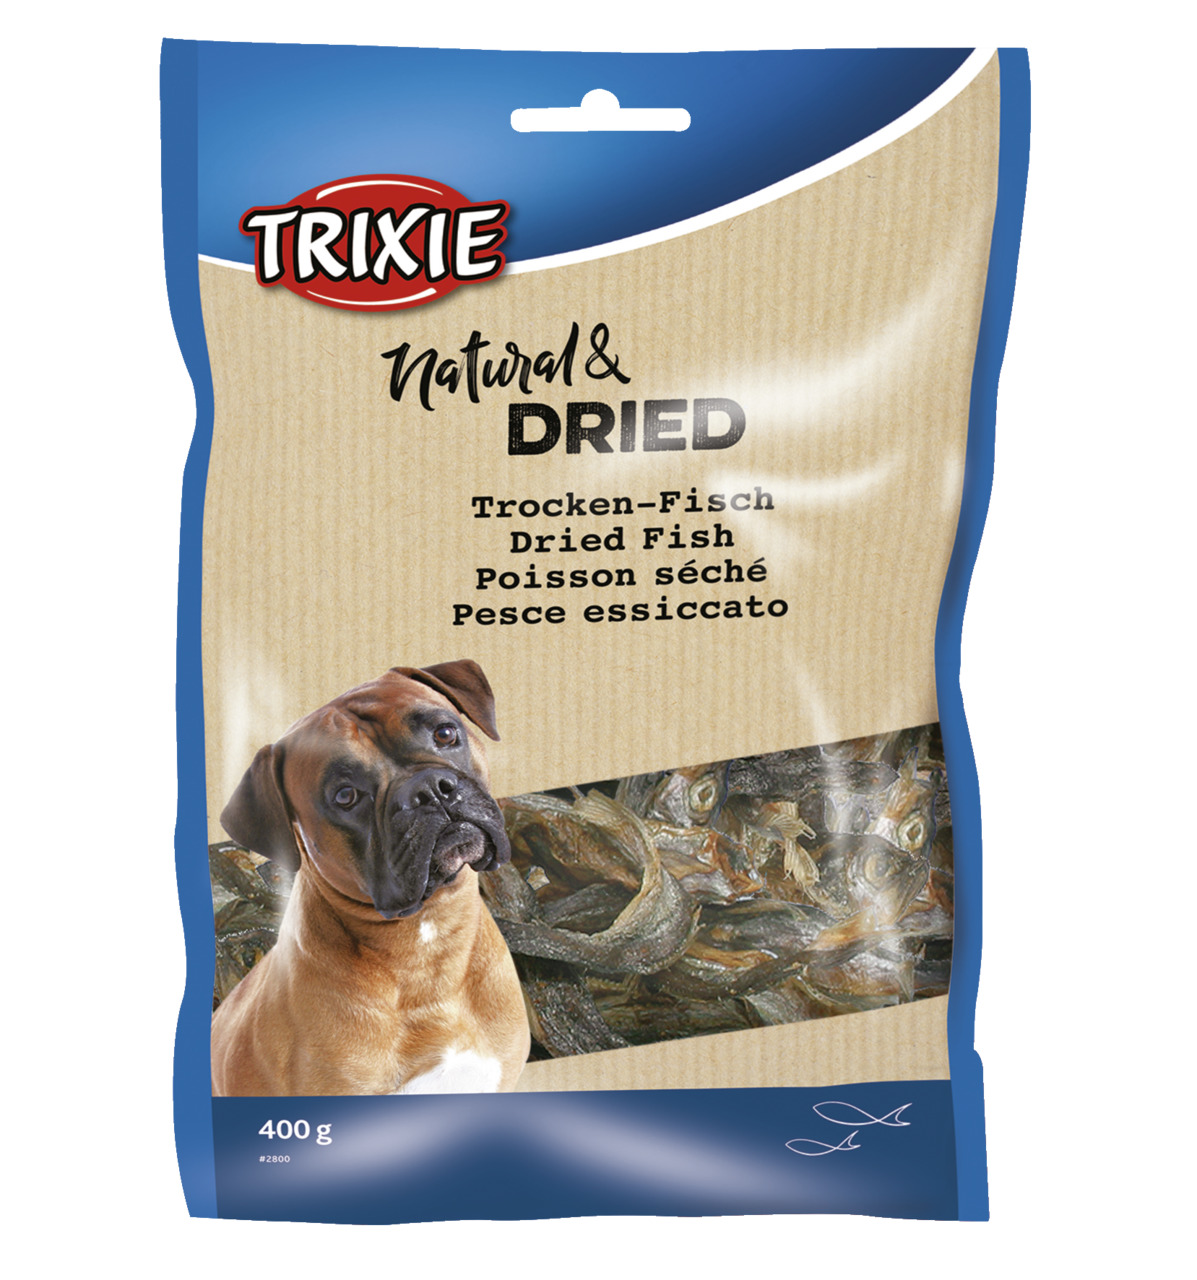 Trixie Natural & Dried Trocken-Fisch Hunde Snack 400 g